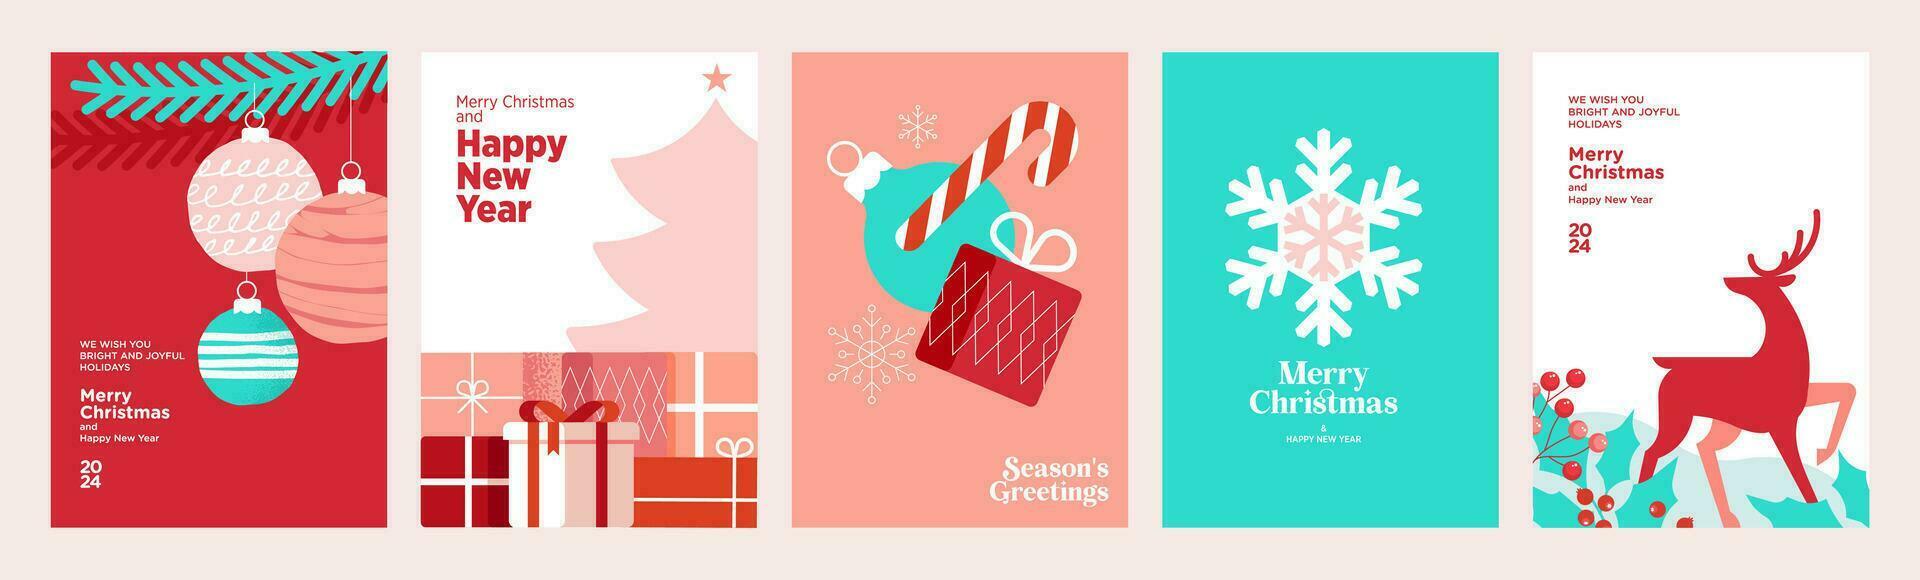 vrolijk Kerstmis en gelukkig nieuw jaar. reeks van vector illustraties voor achtergrond, groet kaart, partij uitnodiging kaart, website banier, sociaal media banier, afzet materiaal.